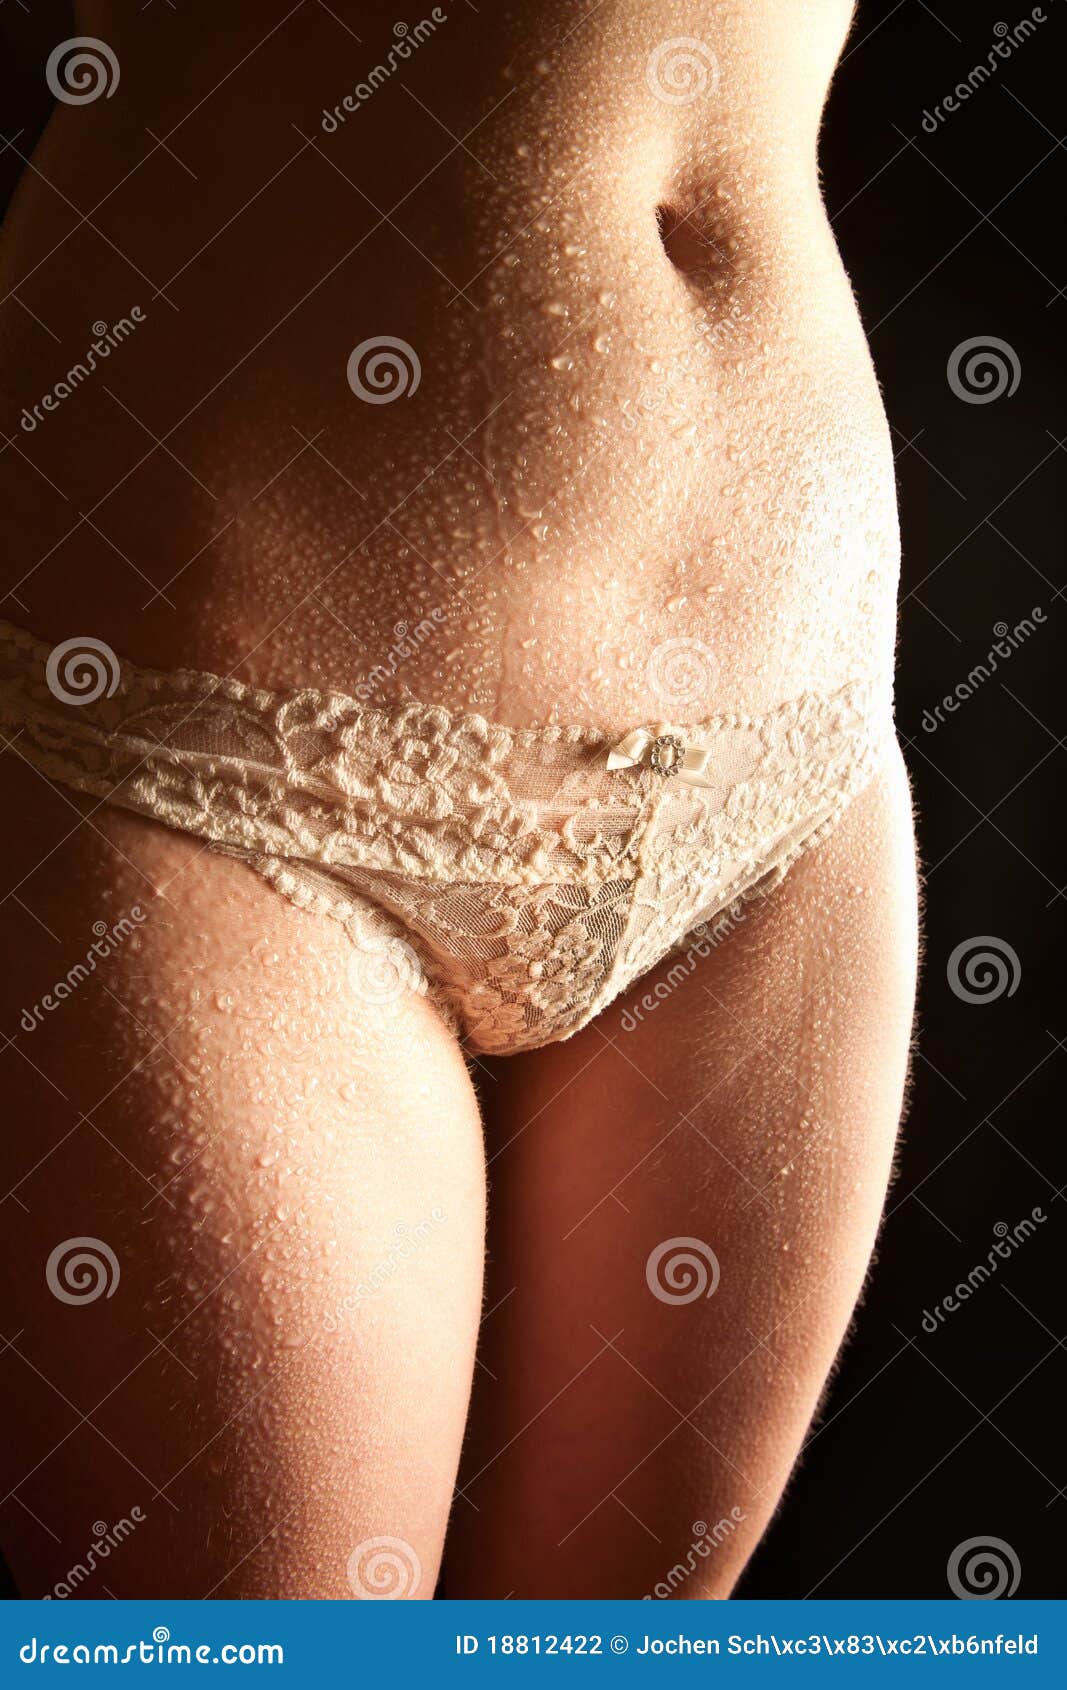 Women wet panties